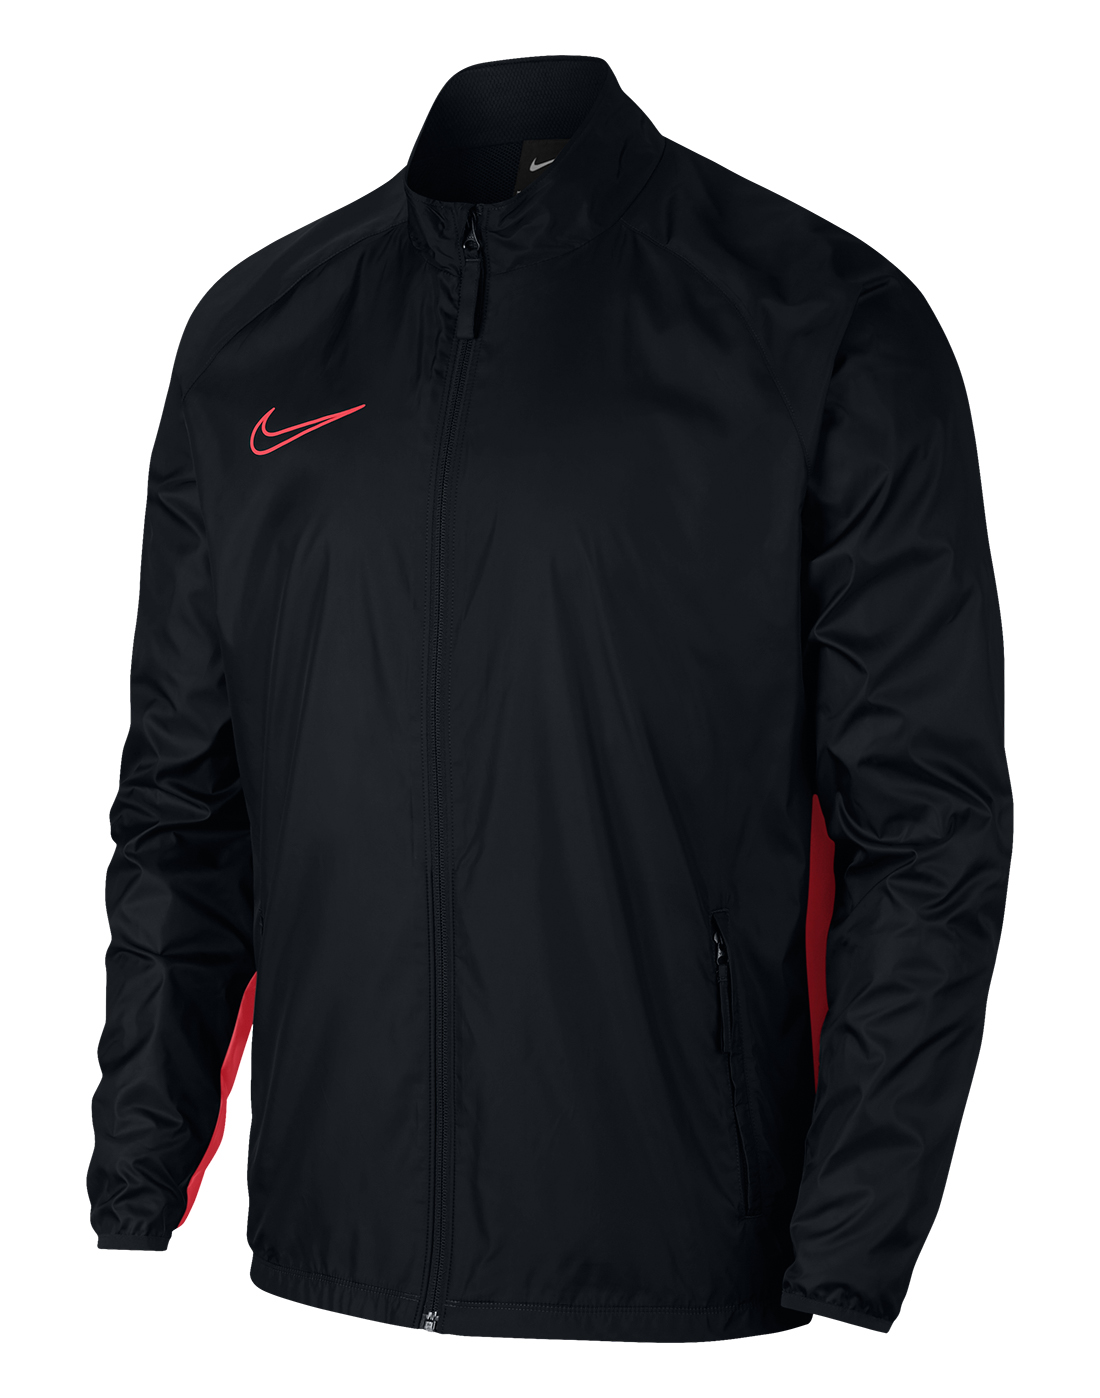 Black & Red Nike Academy Training Jacket | Life Style Sports